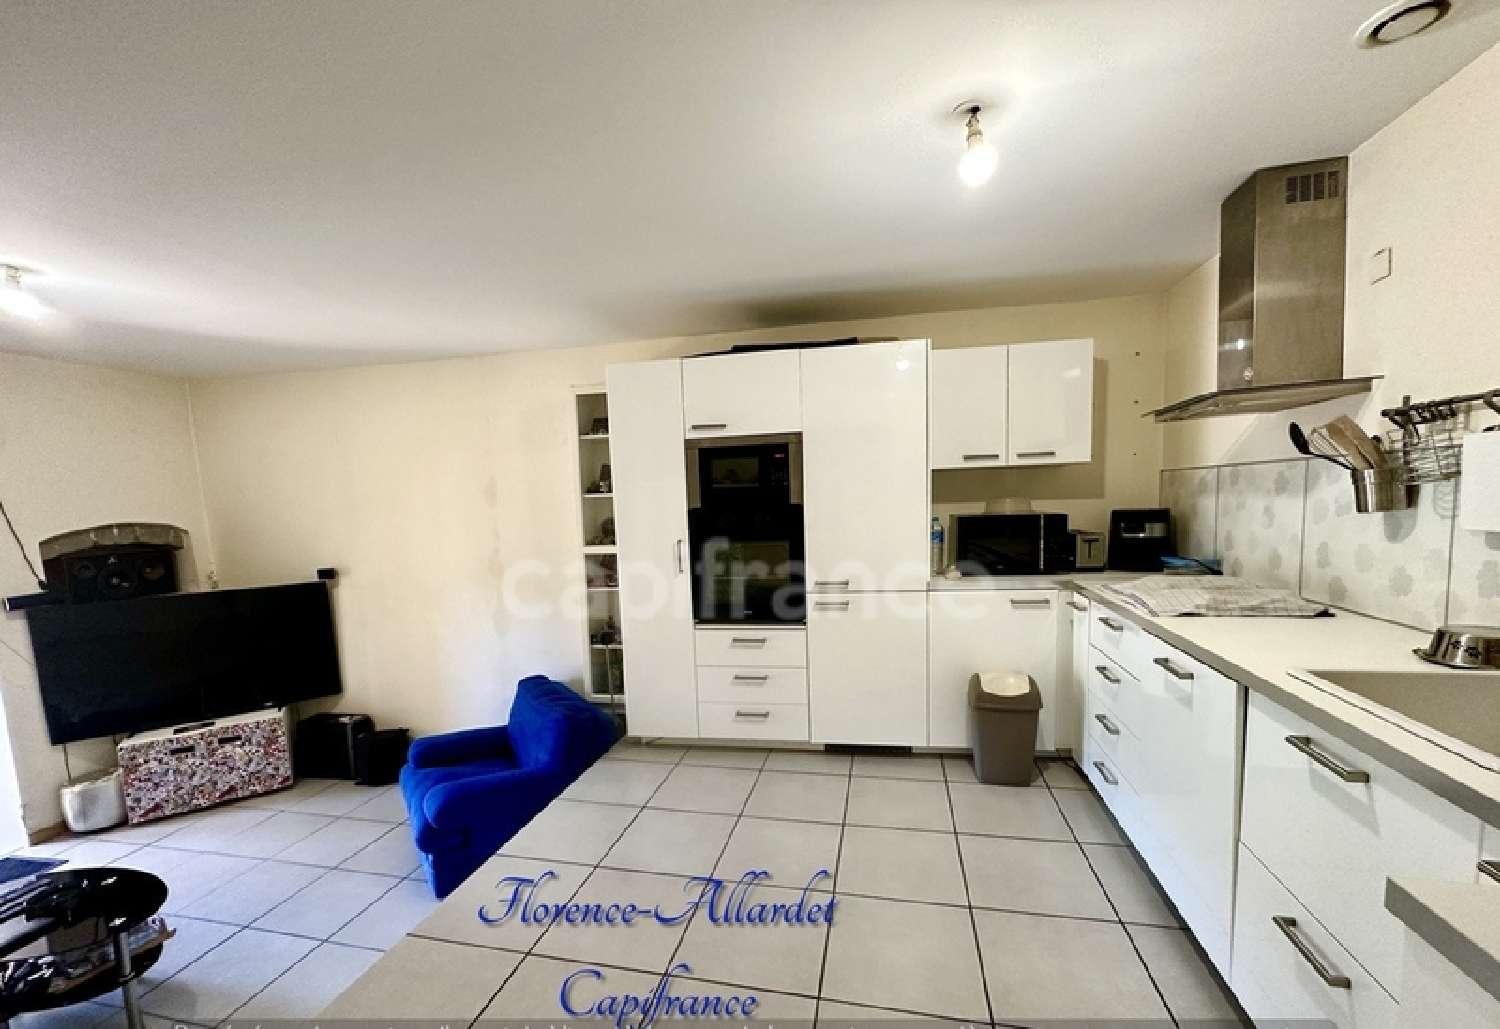 Rumilly Haute-Savoie Wohnung/ Apartment Bild 6798635